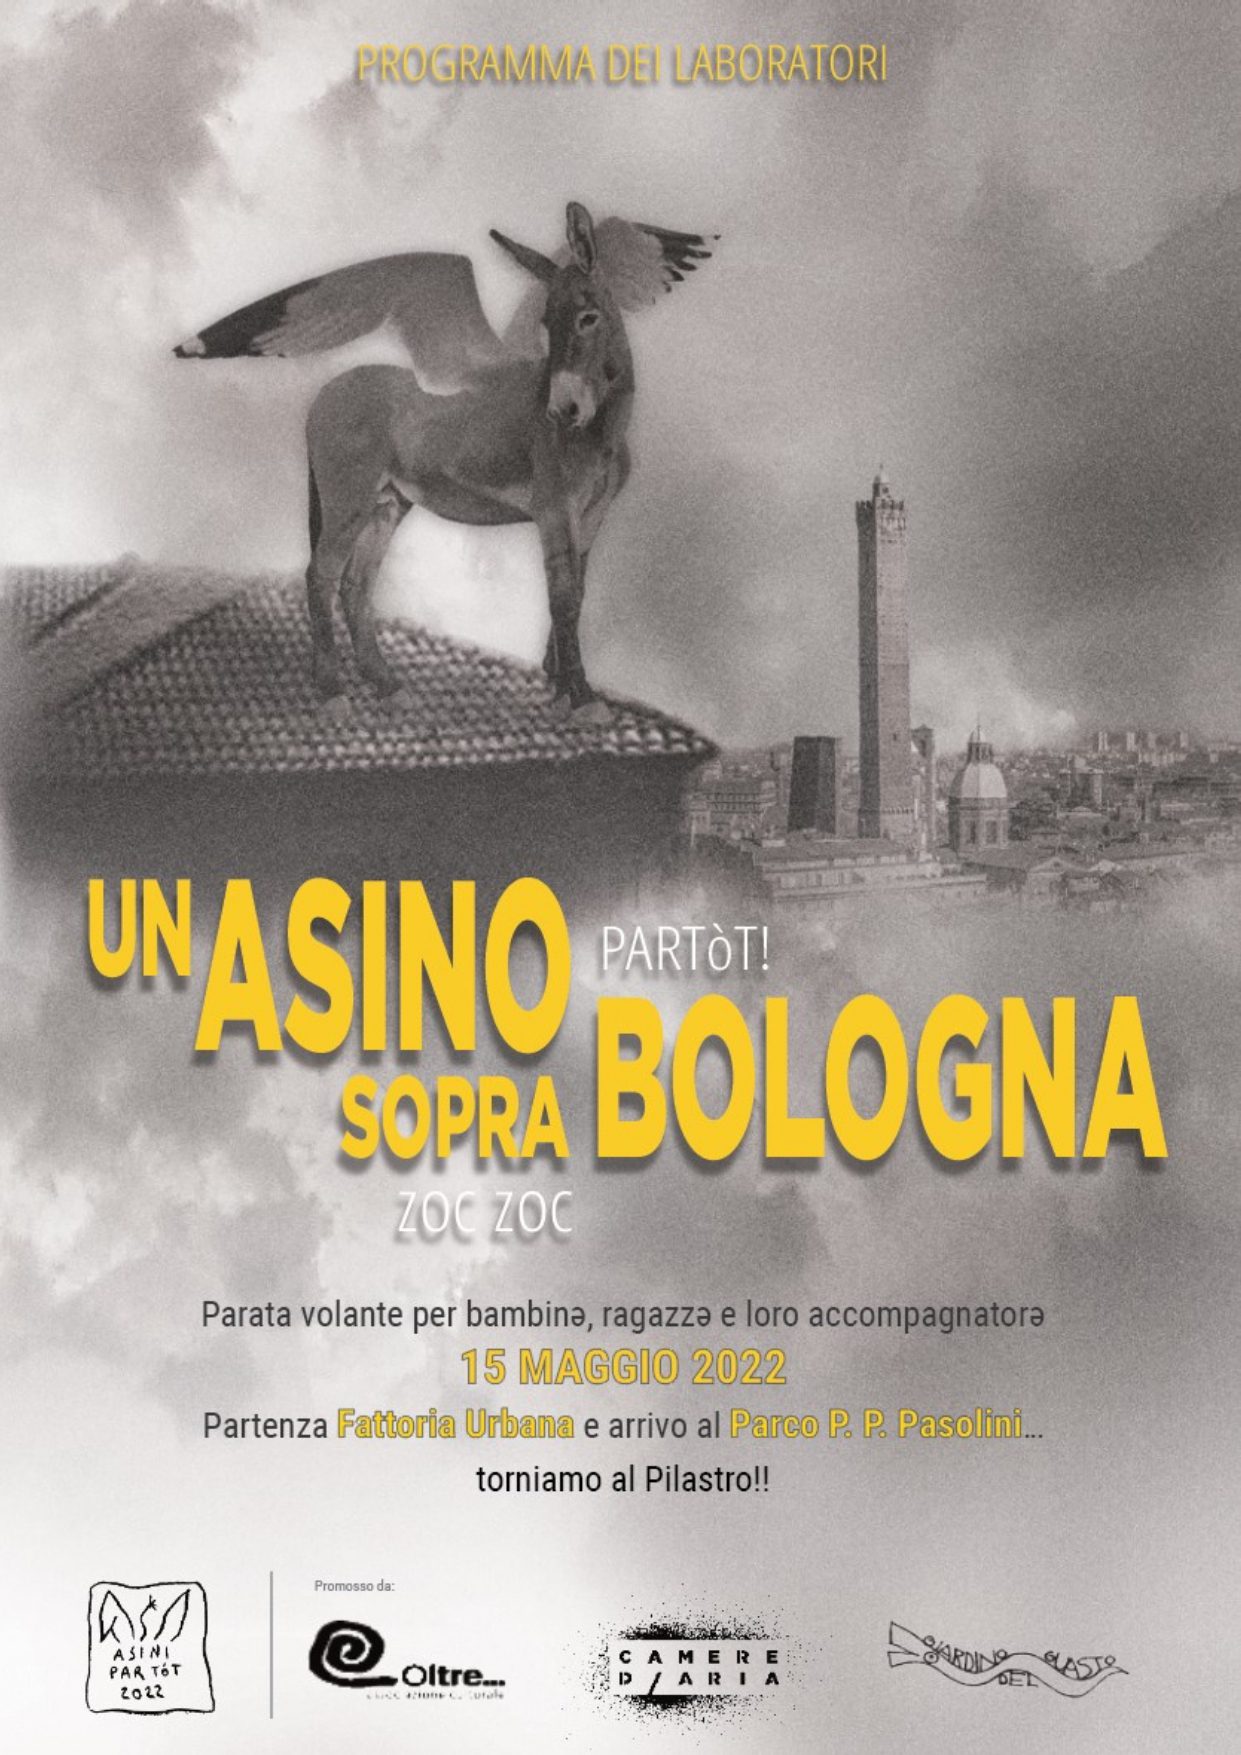 Programma della Par Tòt Parata – Un Asino Sopra Bologna del 15 Maggio 2022! Zoc Zoc!